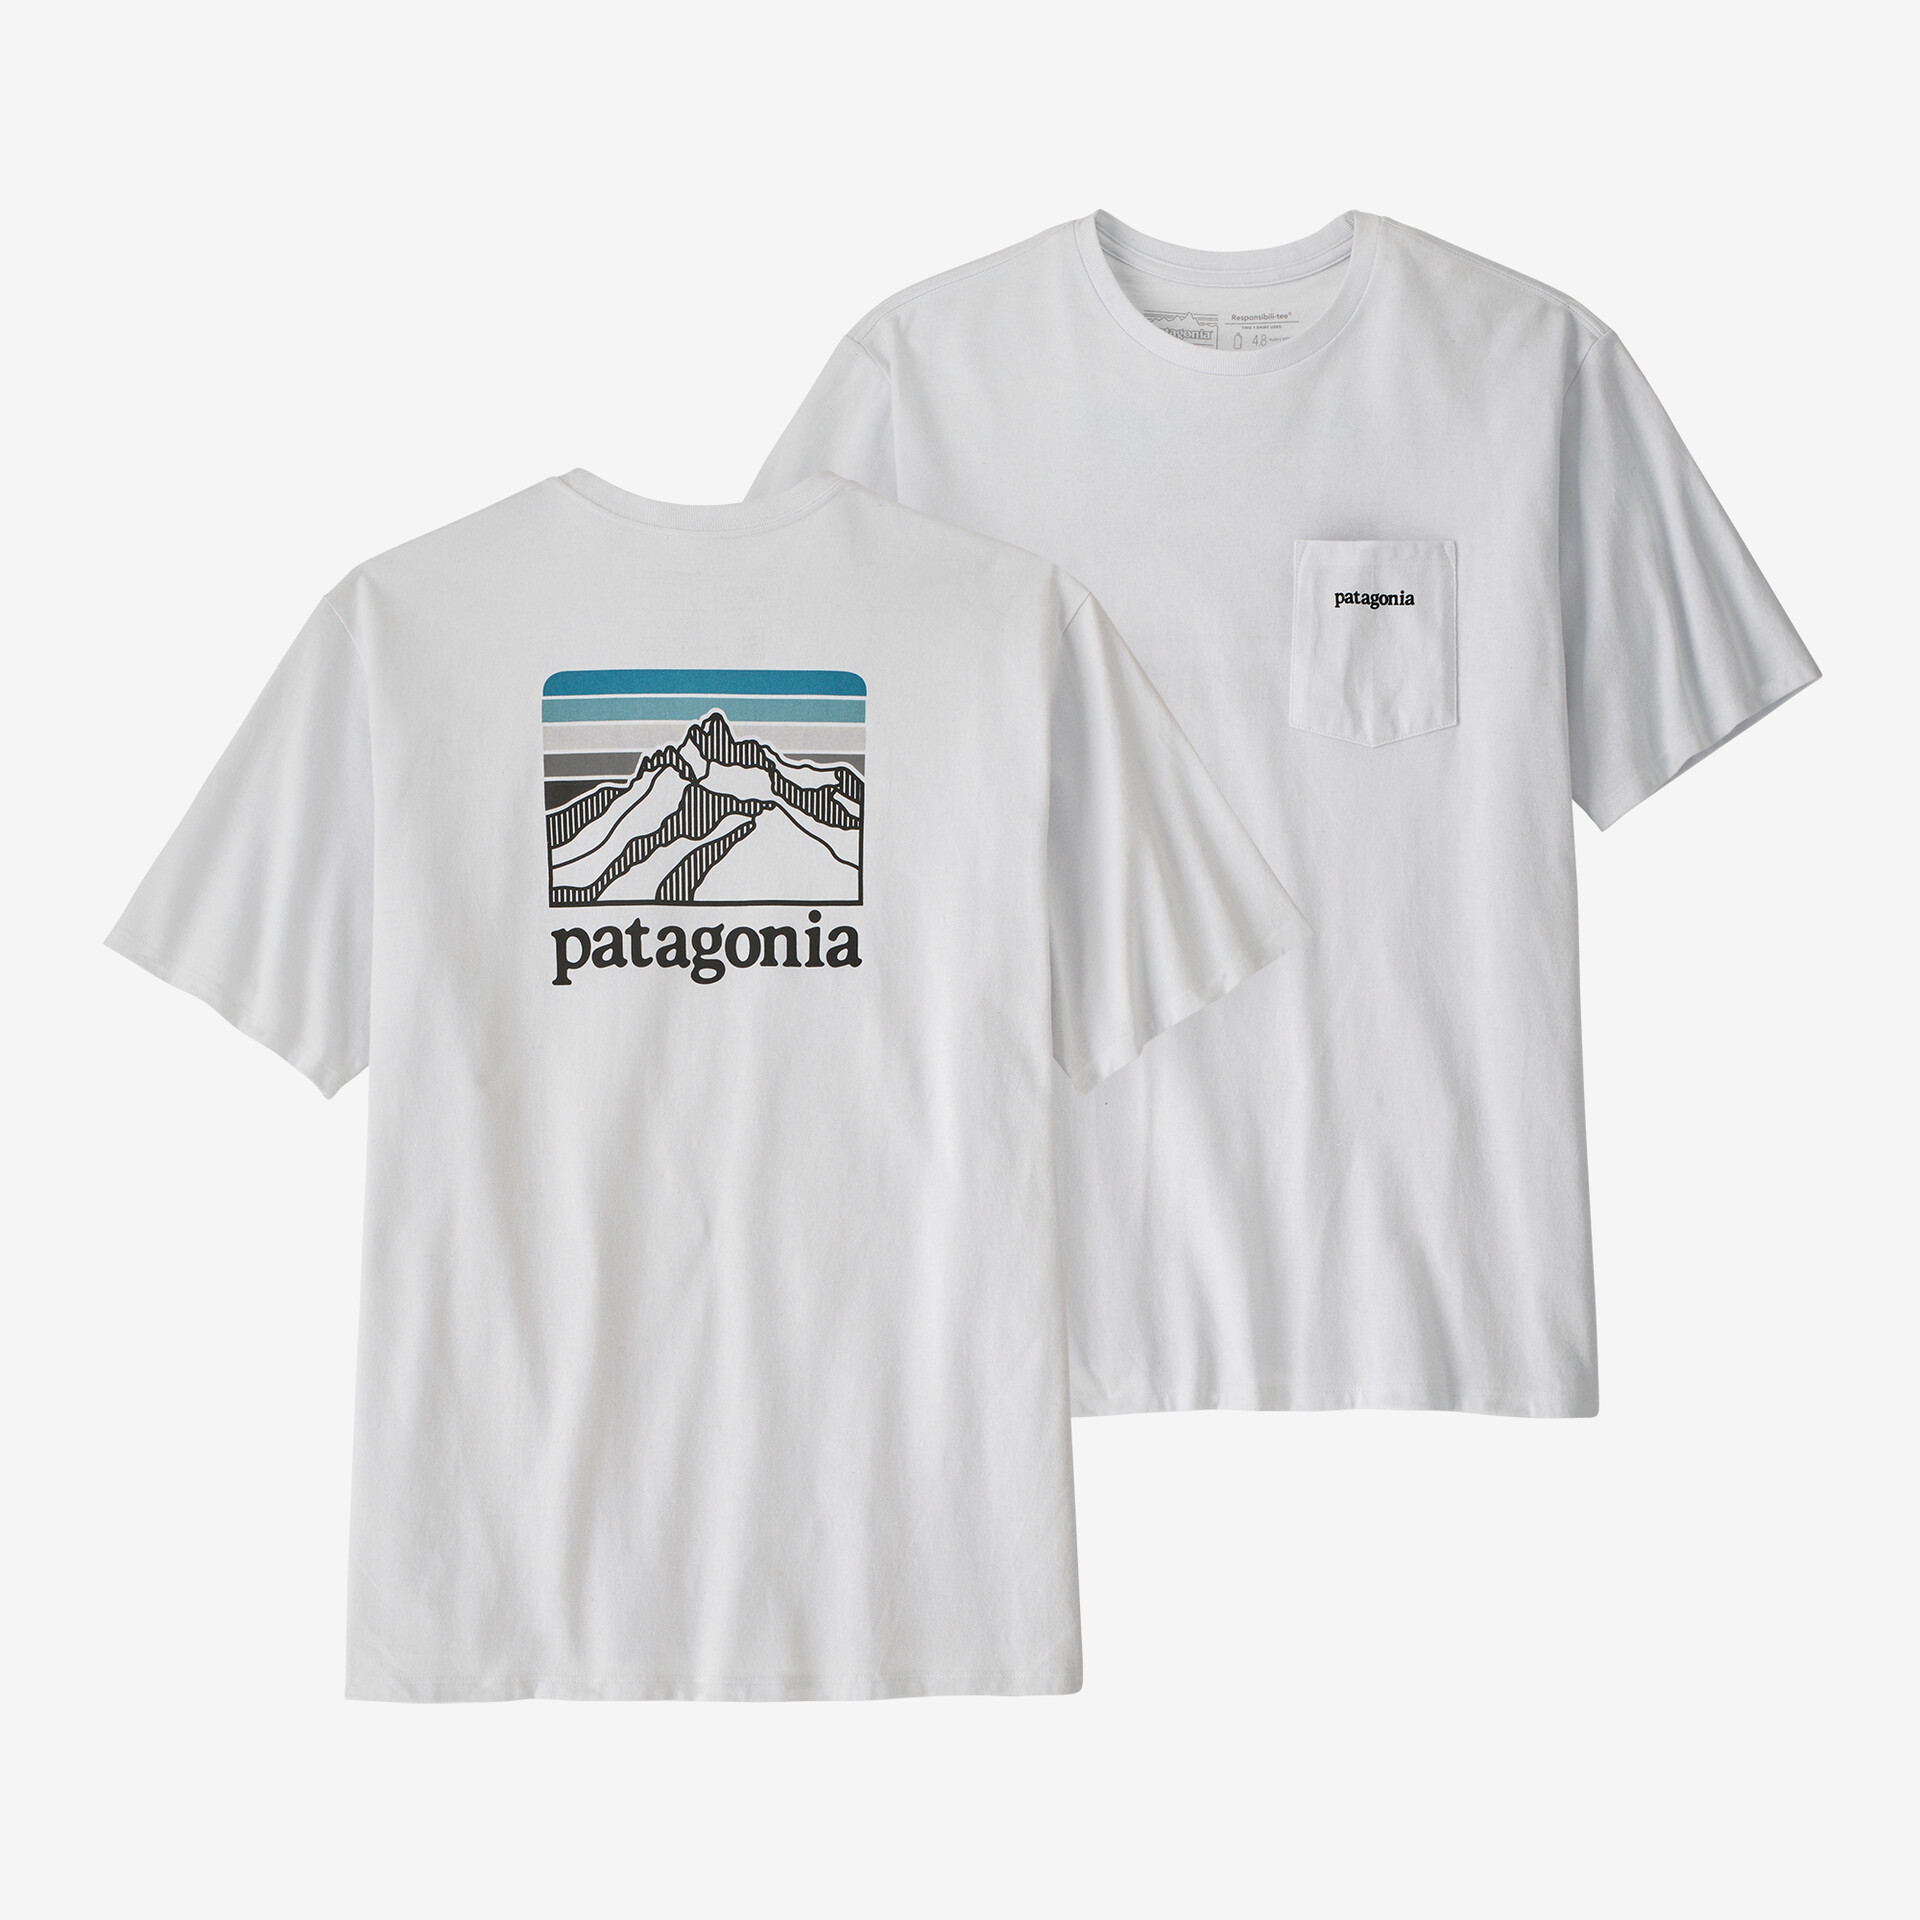 Мужская ответственная футболка с логотипом и карманом Patagonia, белый мужская ответственная футболка с логотипом и карманом patagonia серый